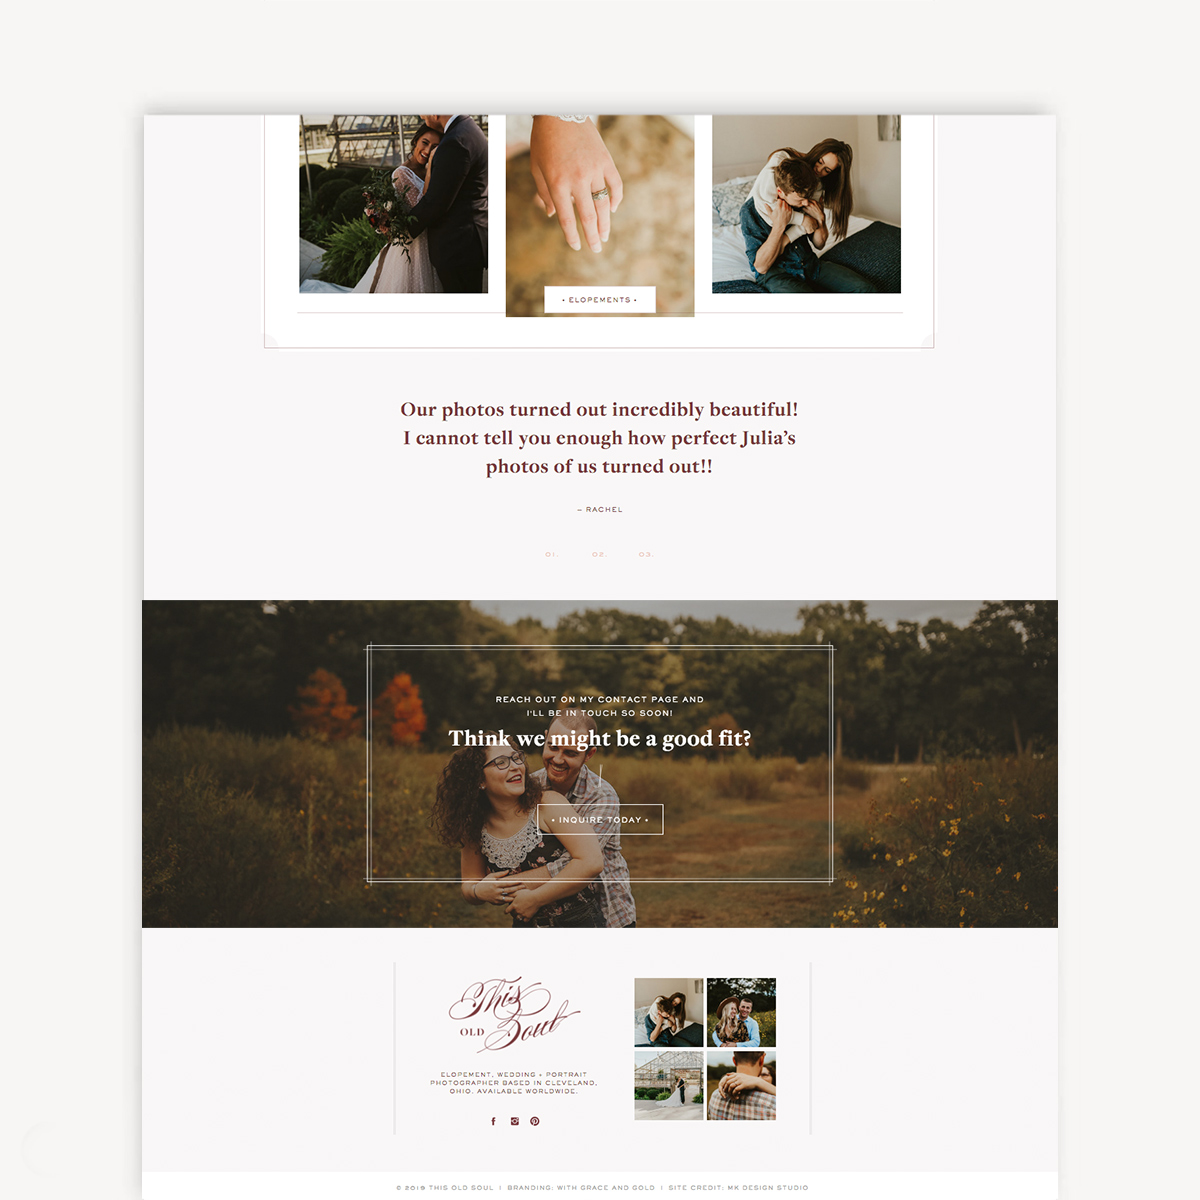 Showit website design snapshot of Julia Mosier’s new website